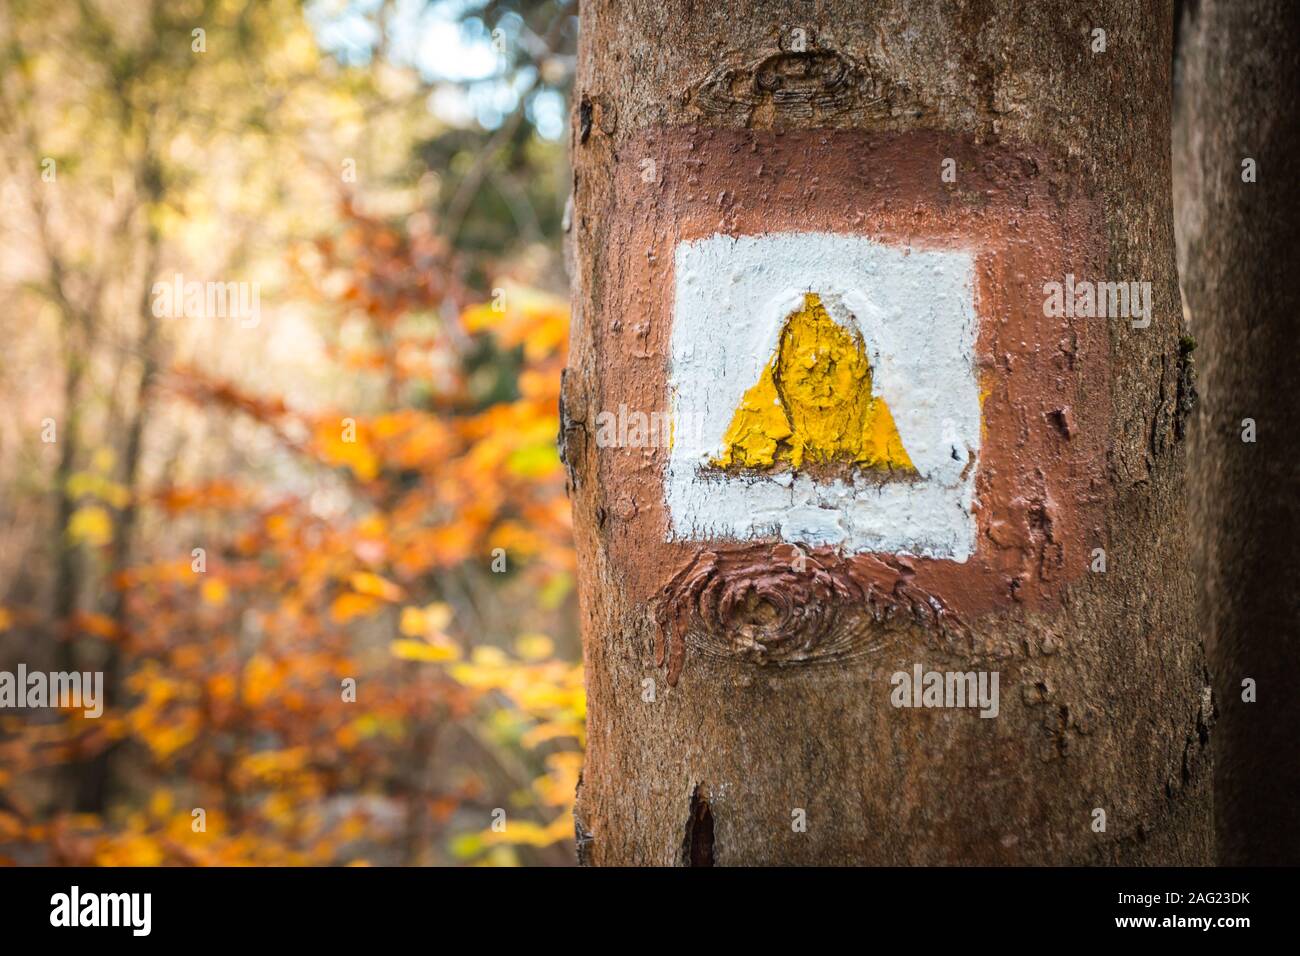 Touristischen Vorzeichen oder Markierung auf Baum neben touristischen Pfad mit schönen Herbst Szene im Hintergrund. Forrest Trail. Stockfoto